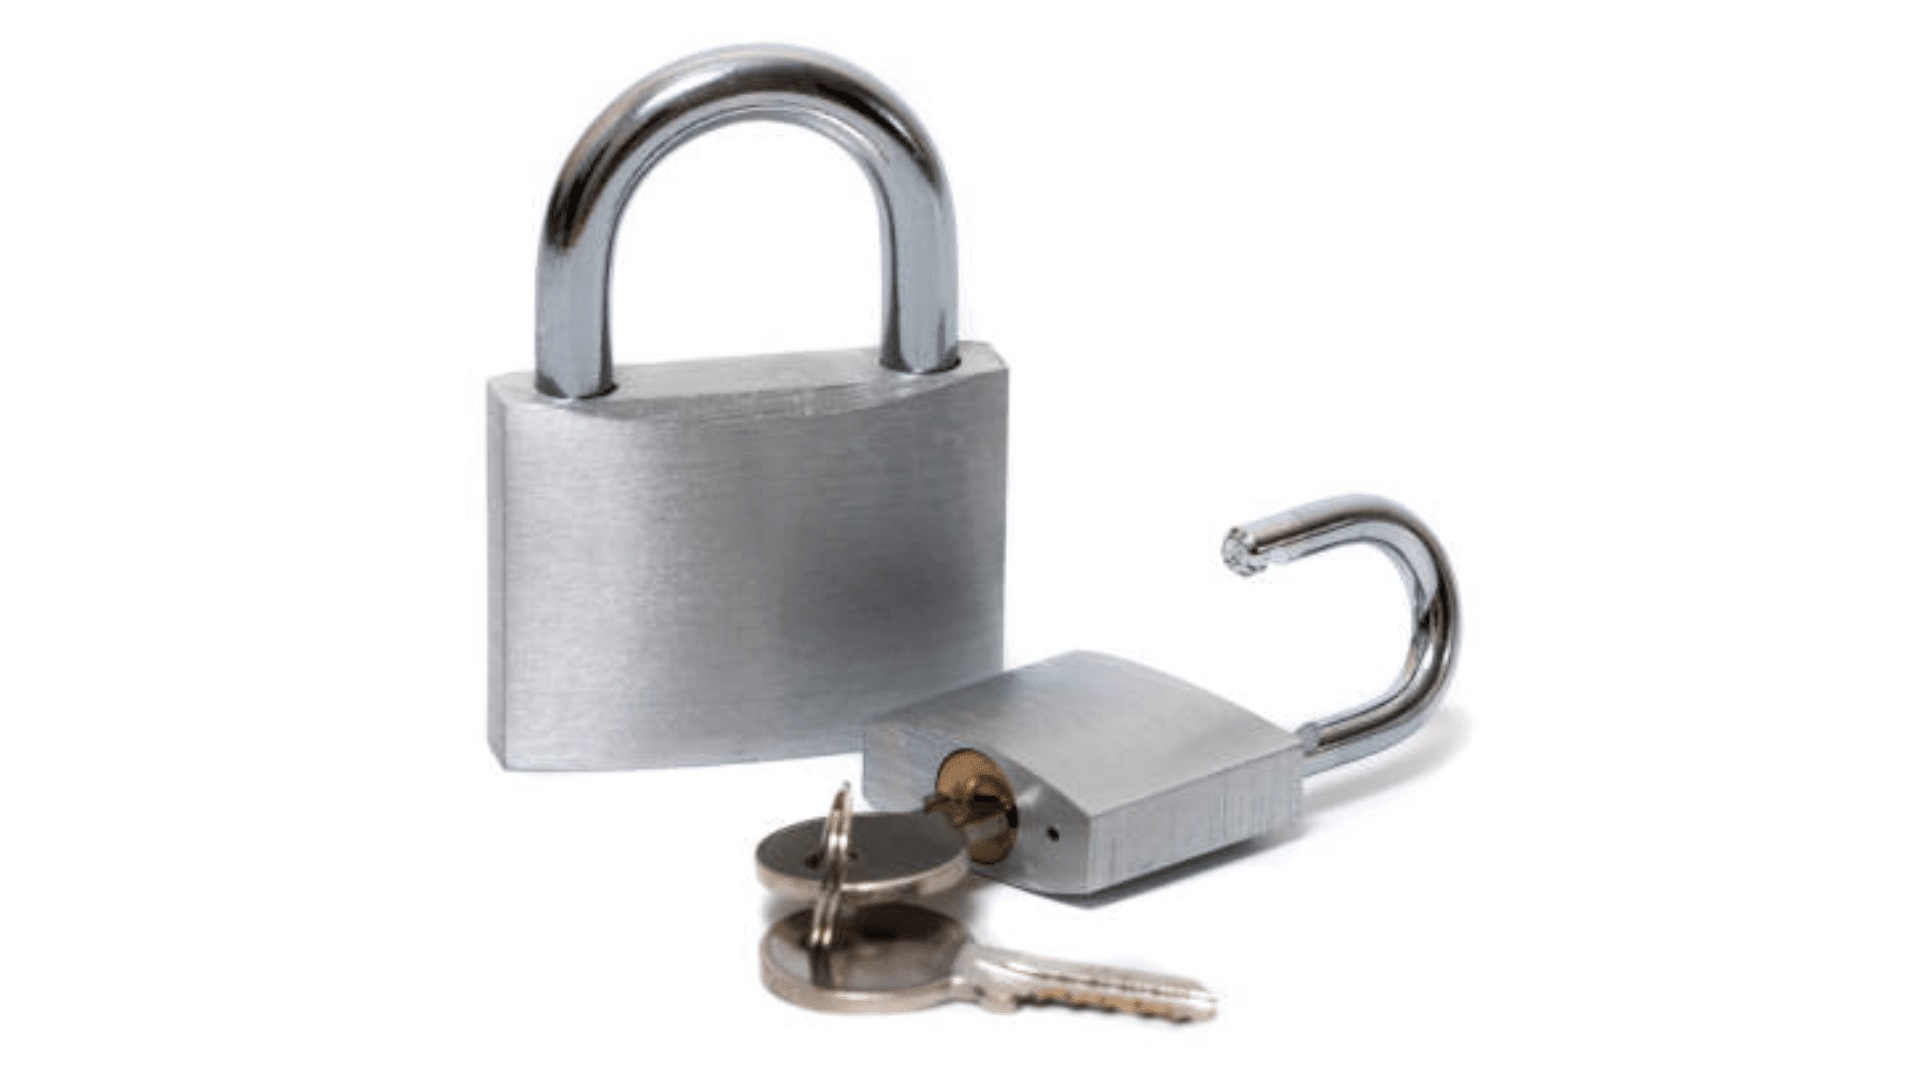 is it better to rekey or change locks